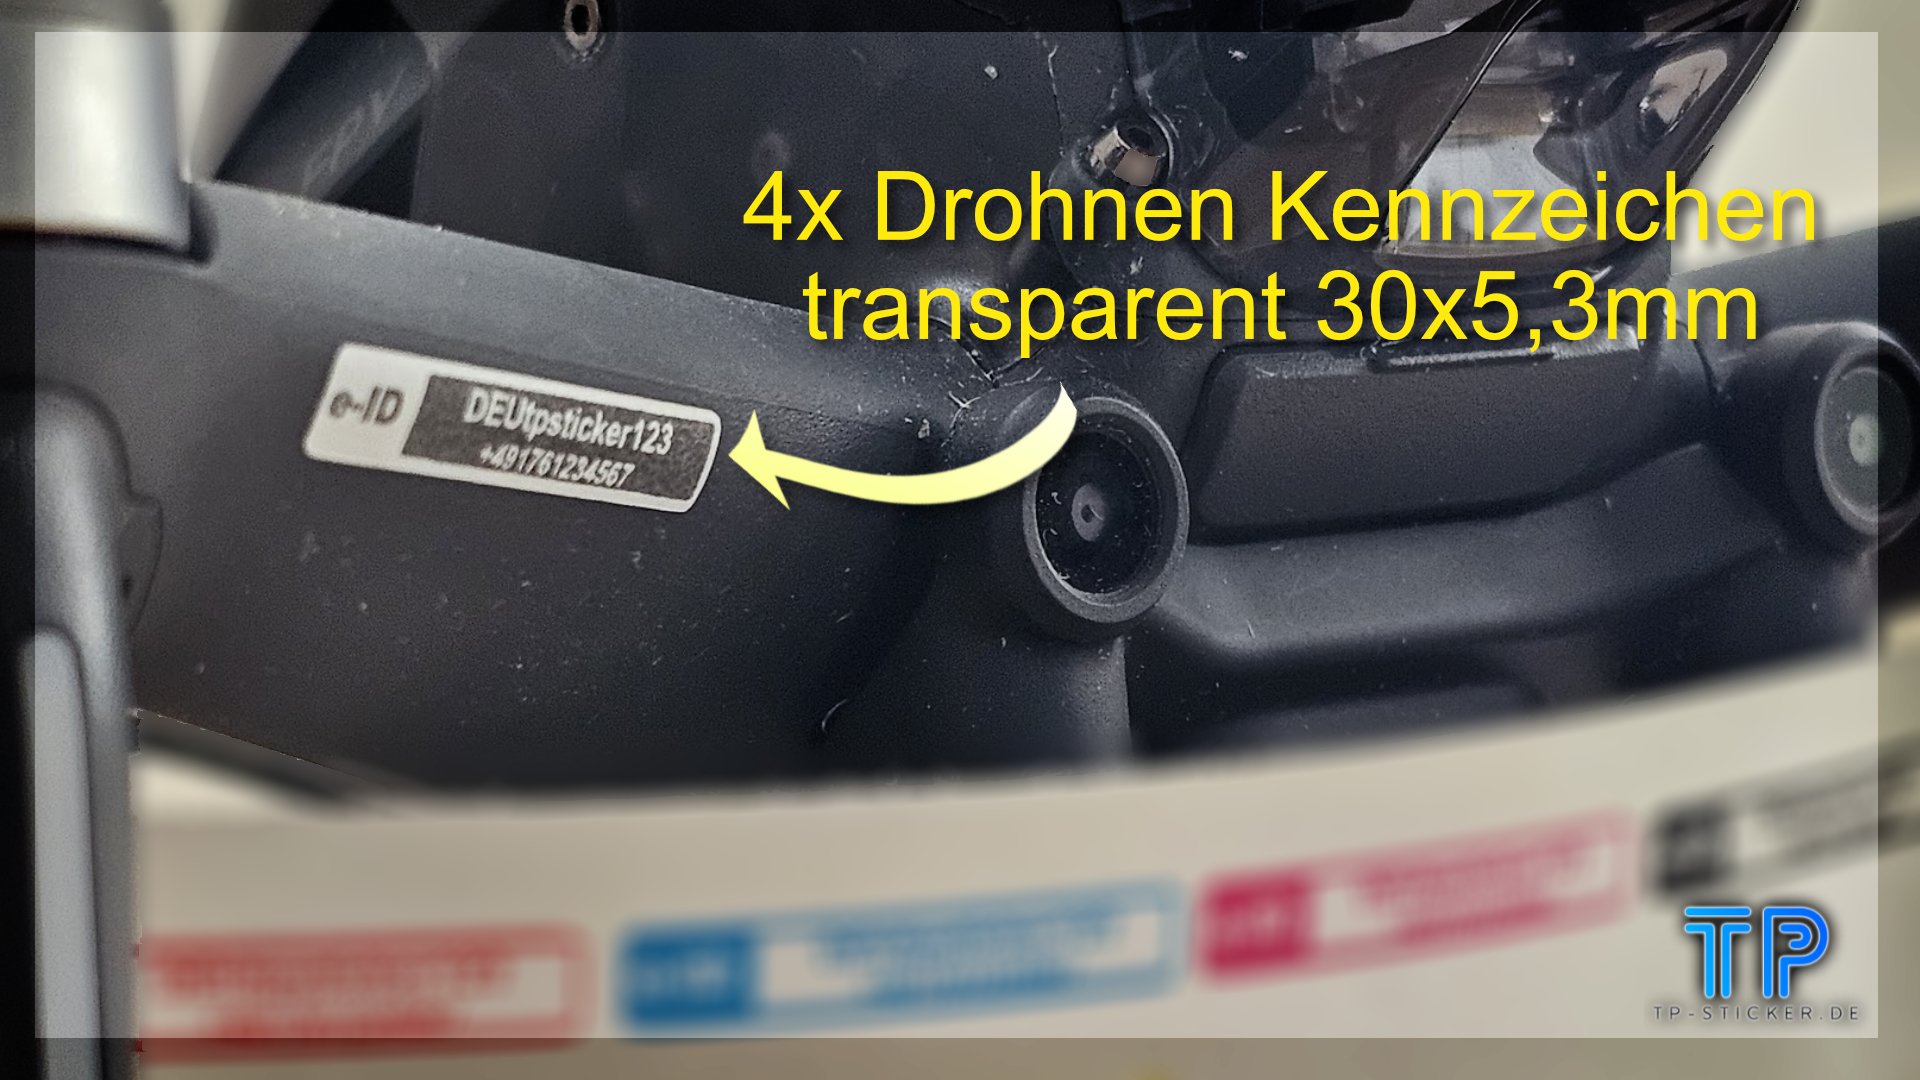 4x transparente Drohnen Kennzeichen eID UAS Kennzeichnung Plakette eID e-ID Adresse